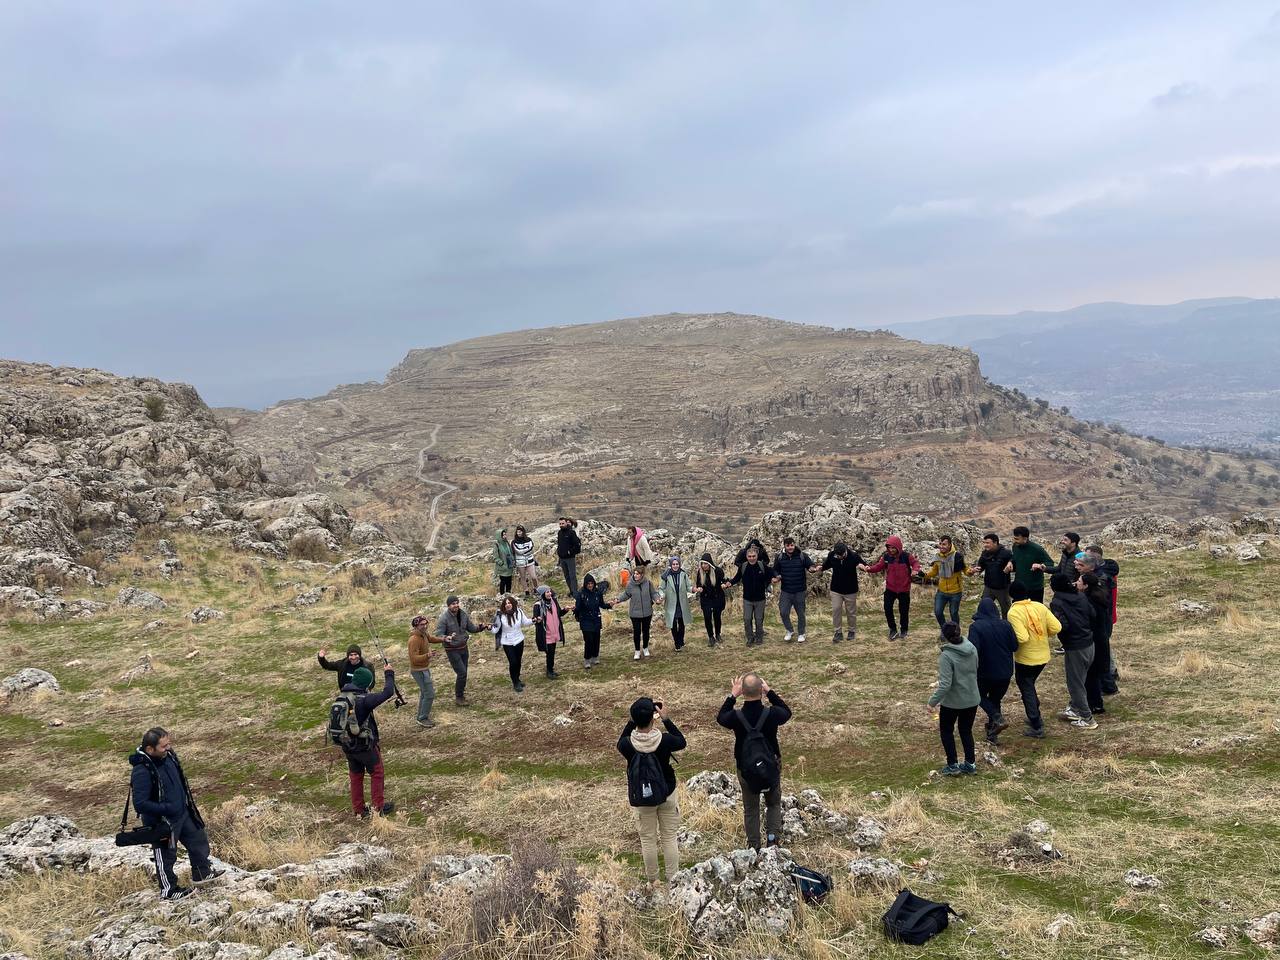 Macera tutkunu öğretmenlerin Mezopotamya dağında halay keyfi